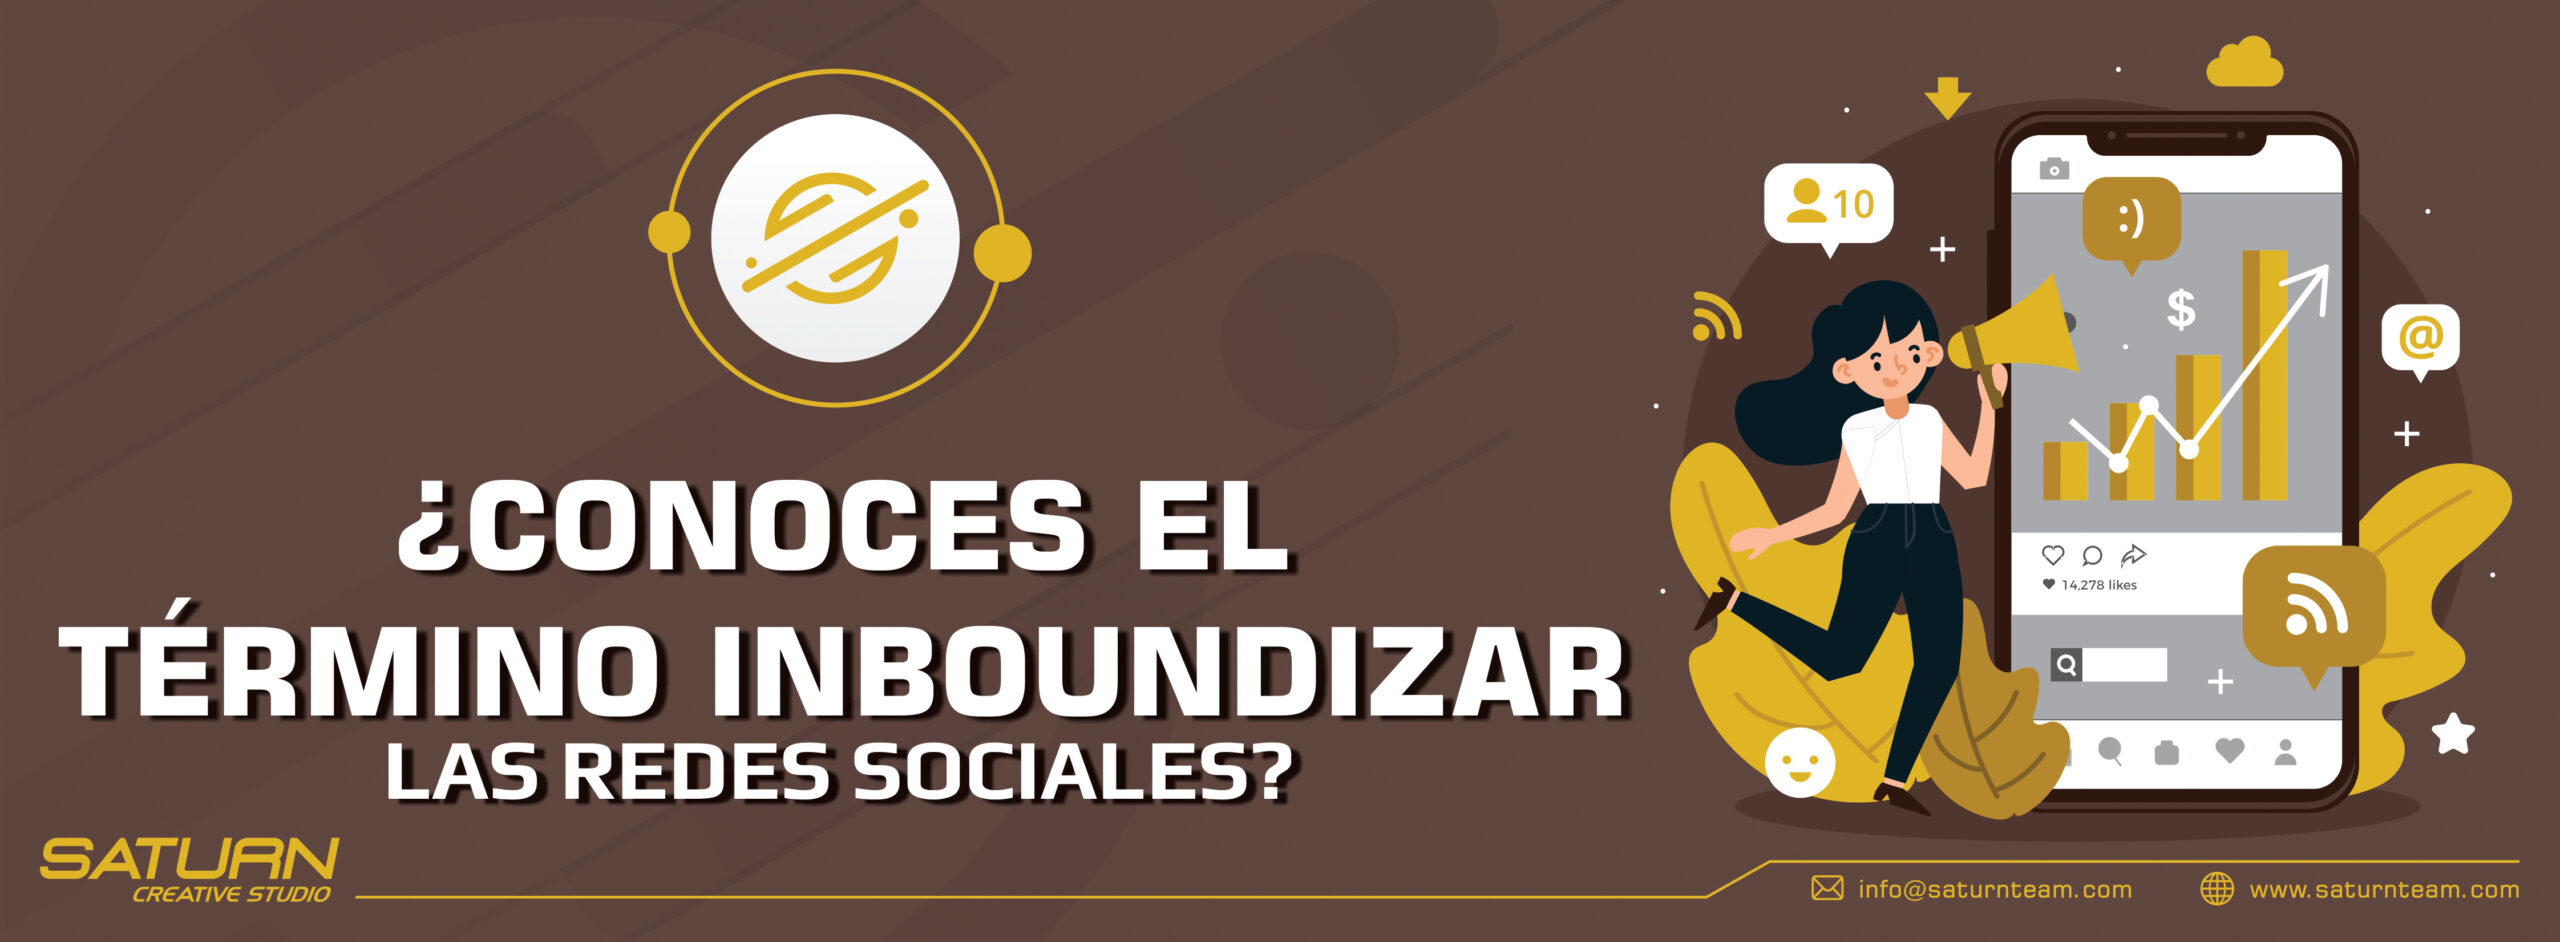 ¿Conoces el término inboundizar las redes sociales?   